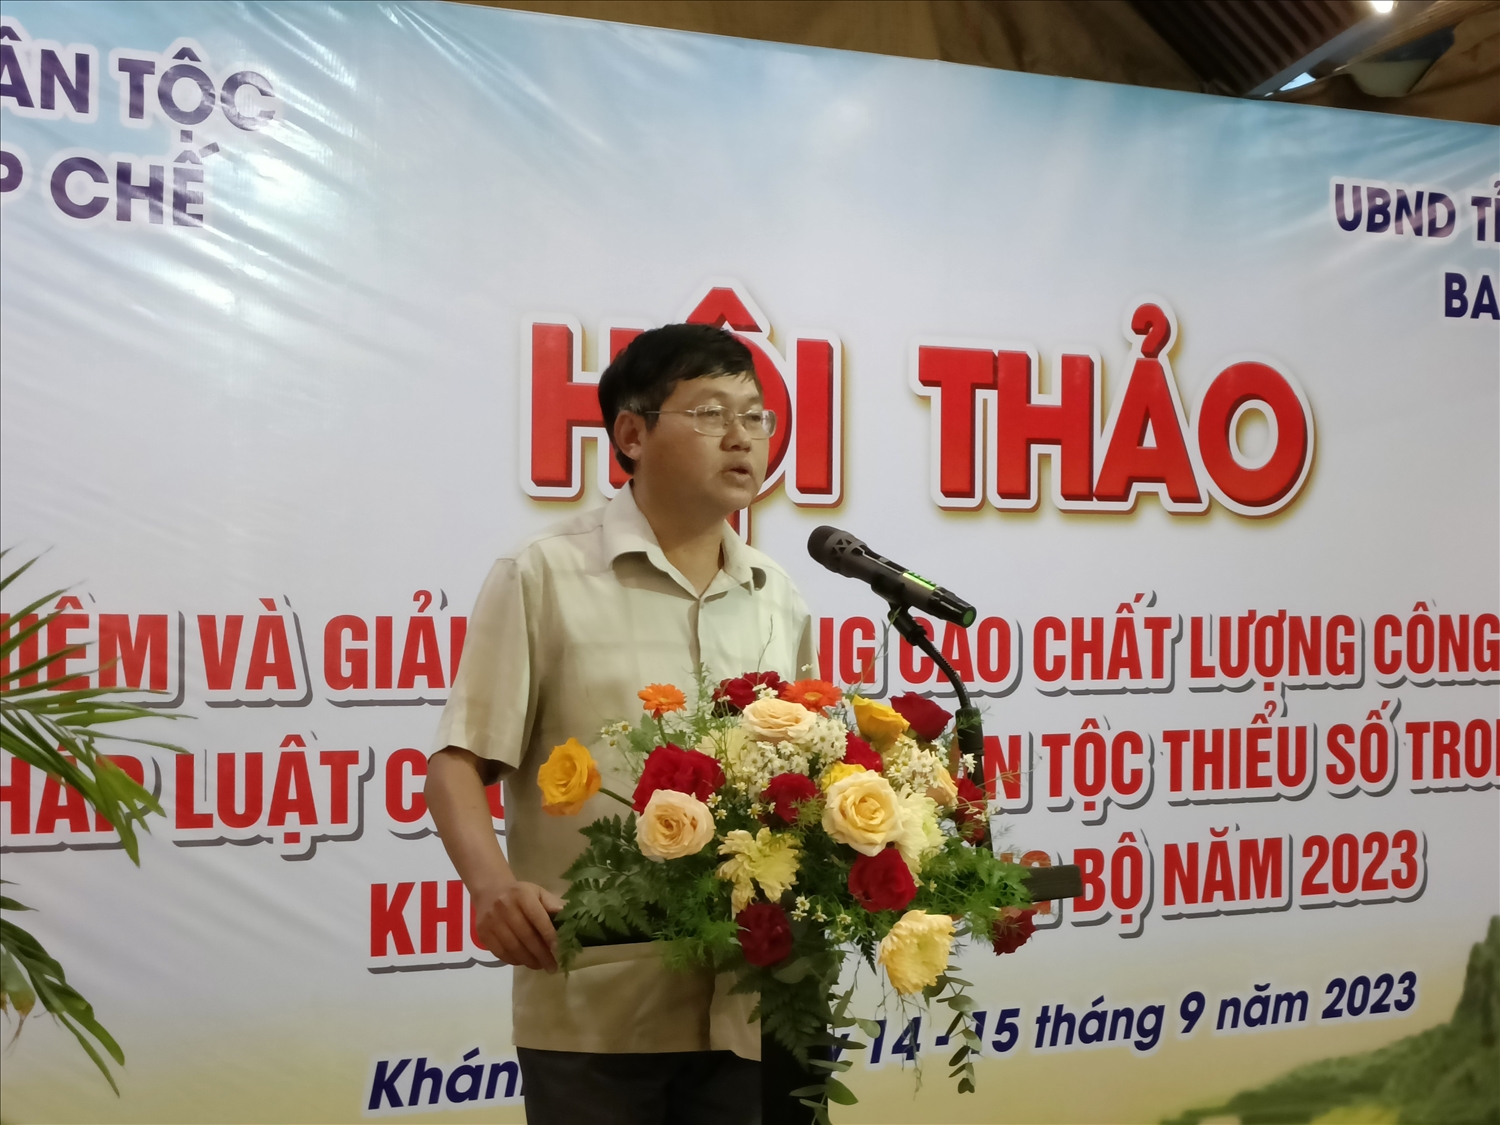 Ông Nguyễn Minh Tân, Trưởng Ban Dân tộc Bình Thuận thâm luận tại Hội thảo